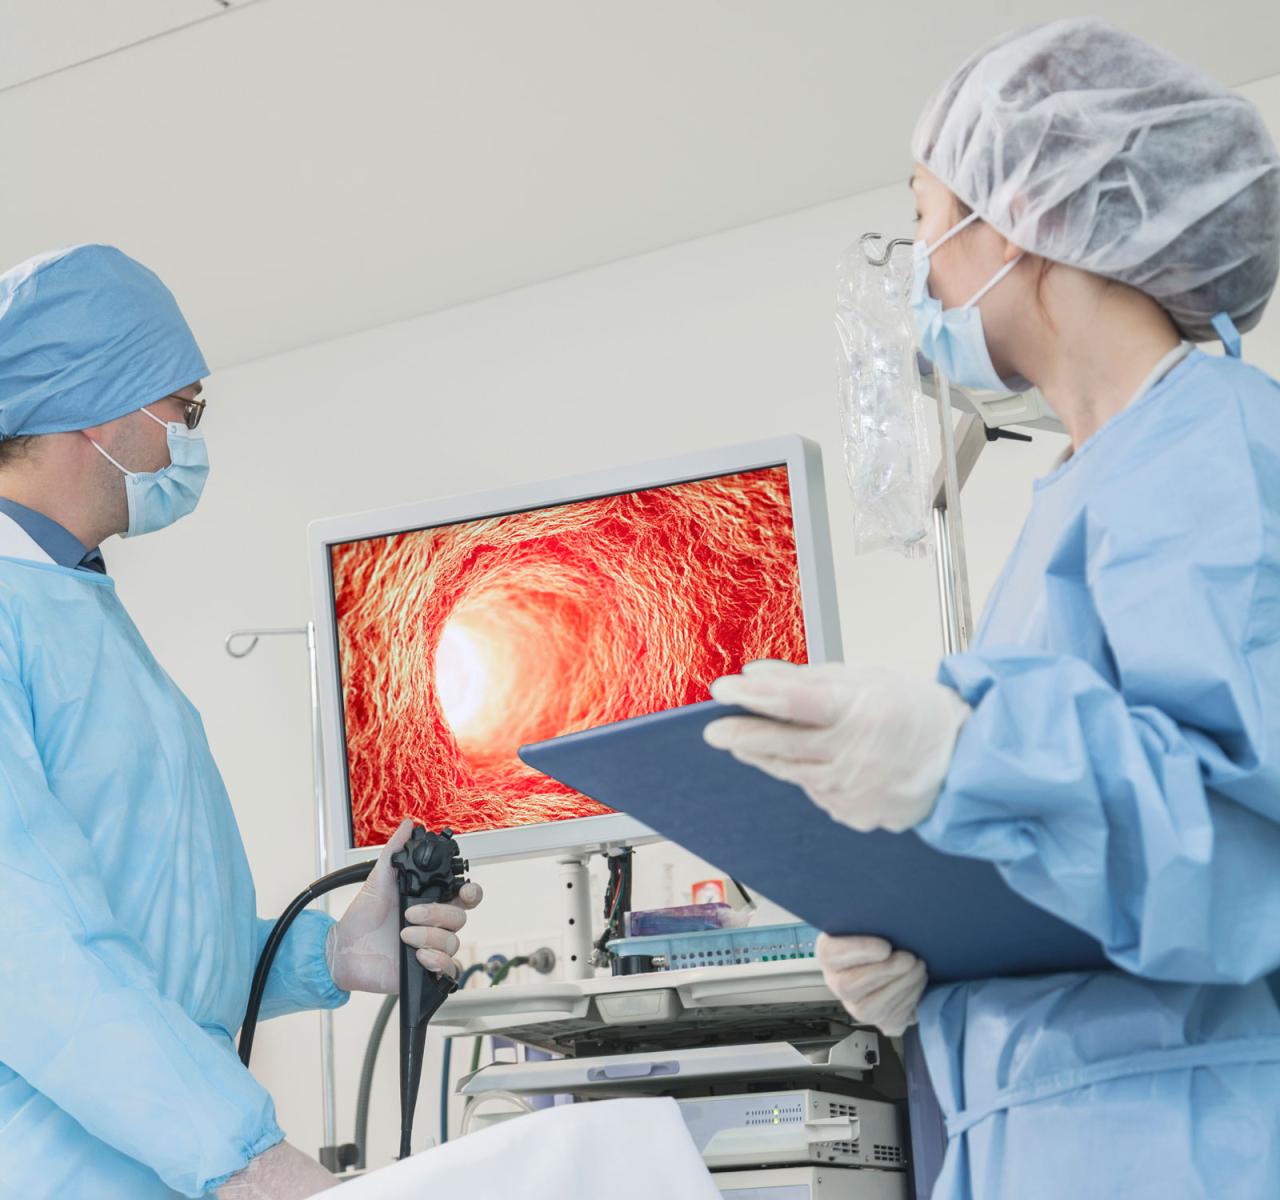 Die Endoskopie, ein minimal-invasives medizinisches Verfahren, das für chirurgische und diagnostische Zwecke zum Betrachten oder Abbilden des Inneren des menschlichen Körpers eingesetzt wird, bedient sich der LED-Beleuchtungstechnologie.